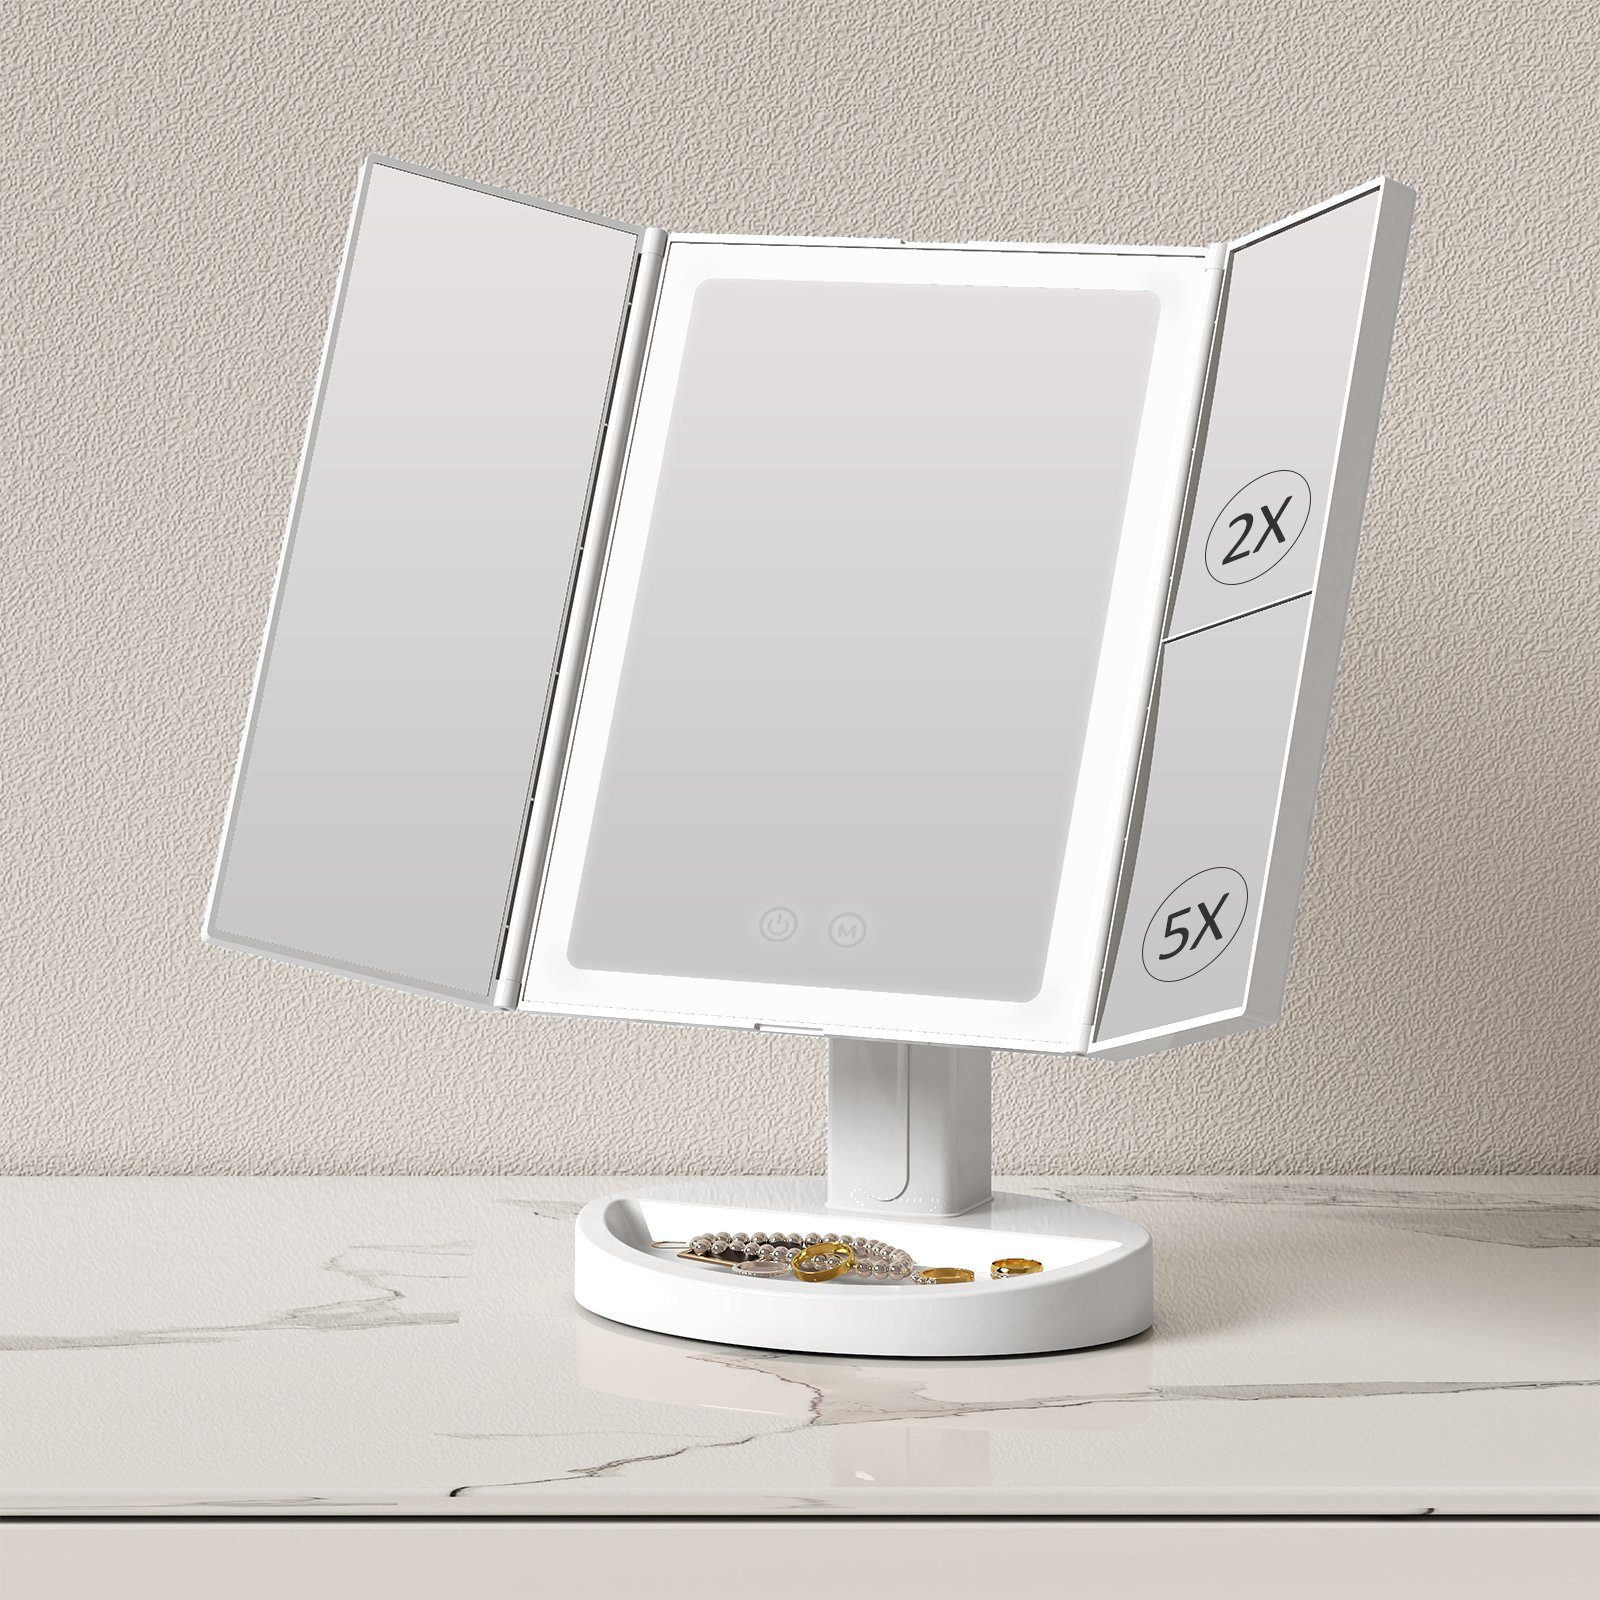 EMKE Schminkspiegel Faltbarer LED Kosmetikspiegel Aufladbar,2x/5x Dimmbar, Touchschalter,3 zweiseitig, Vergrößerungsspiegel Lichtfarben USB Vergrößerung Weiß